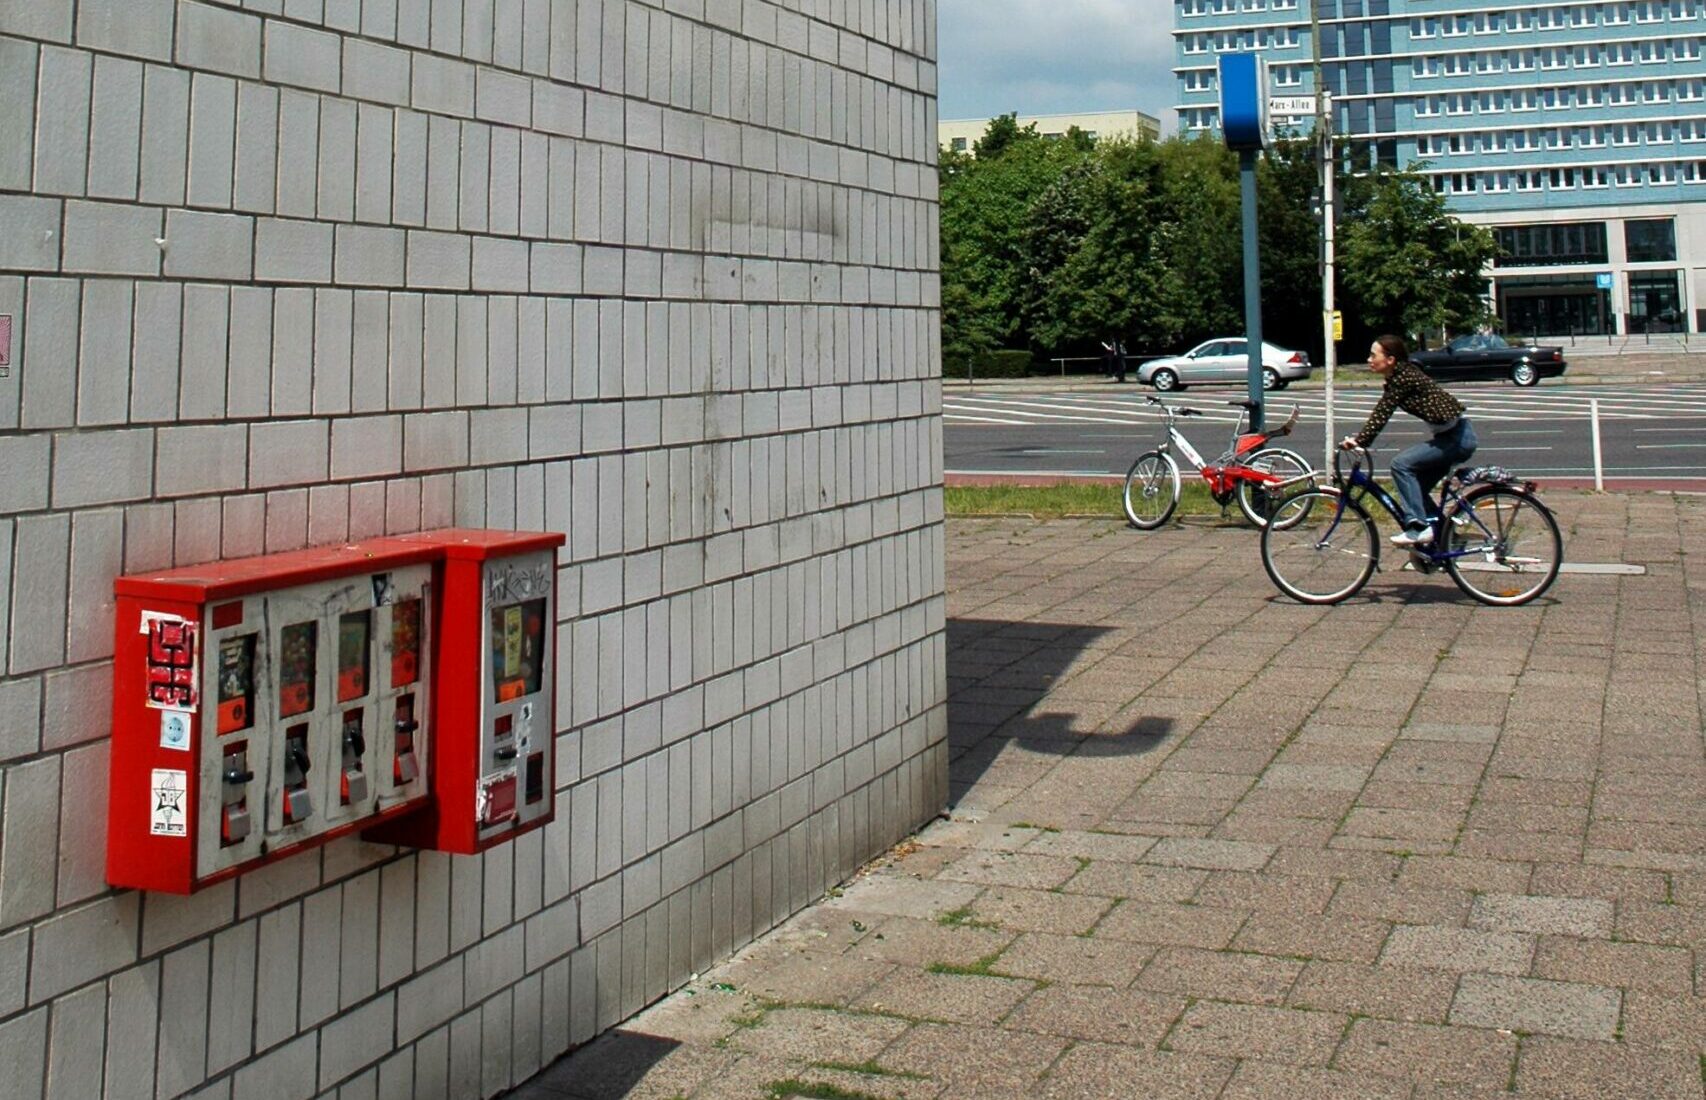 Kaugummiautomaten Berlin